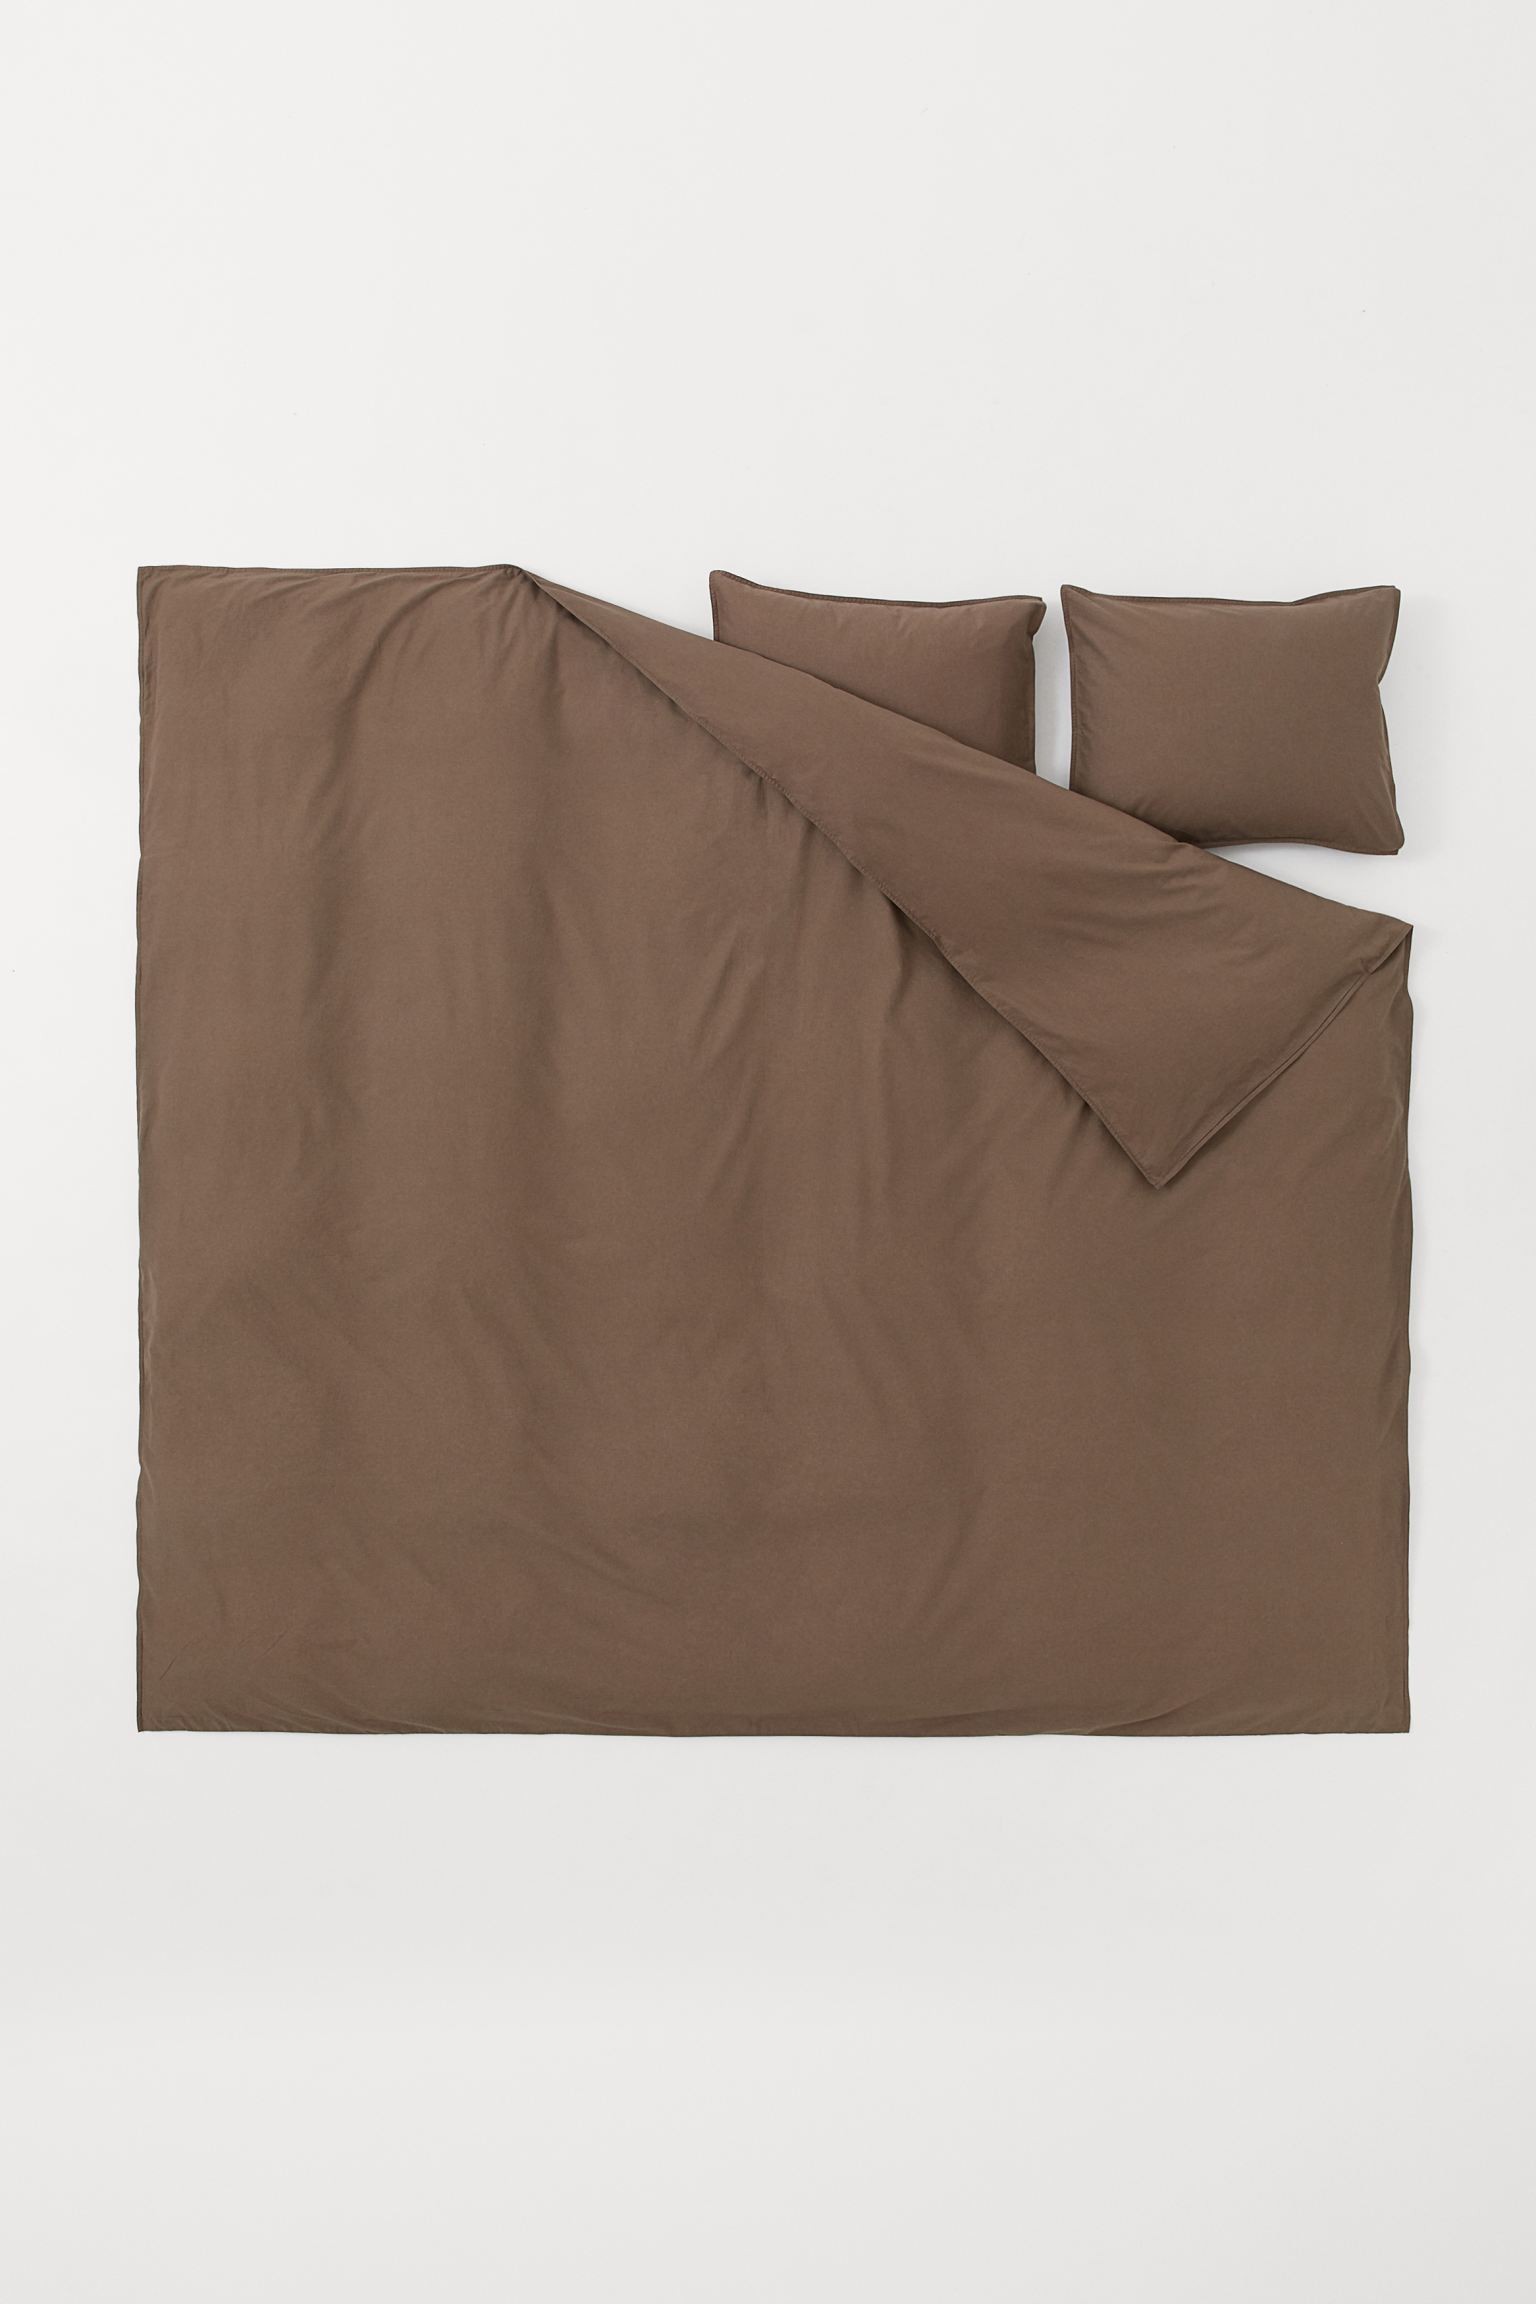 H&M Home Двуспальное постельное белье из хлопка, Темно коричневый, 200x200 + 50x60 0453853043 0453853043